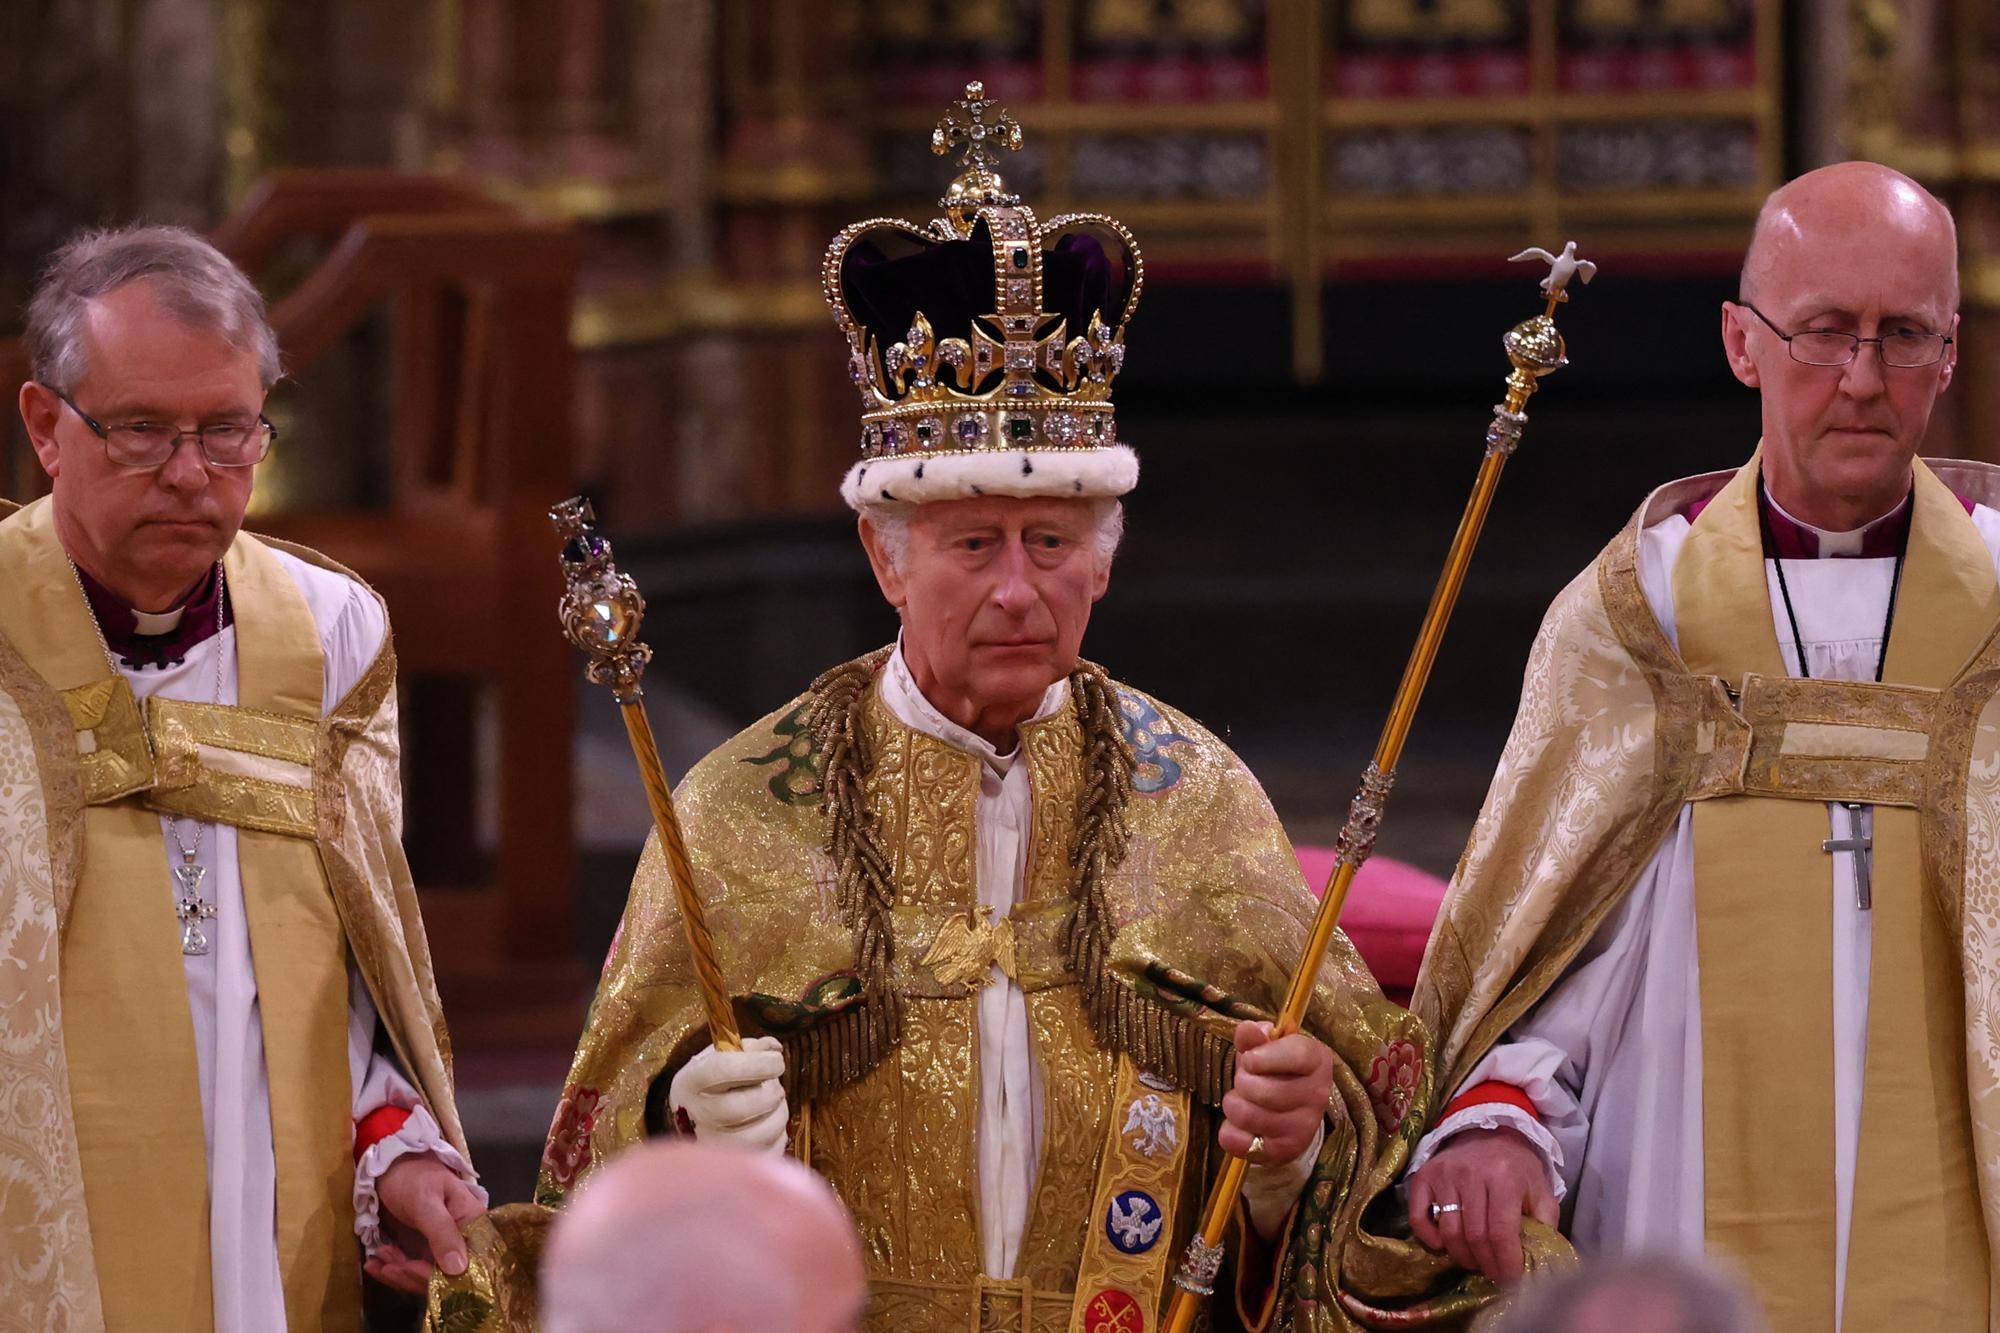 Le roi Charles III officiellement couronné roi à l'abbaye de Westminster. [AFP - RICHARD POHLE]